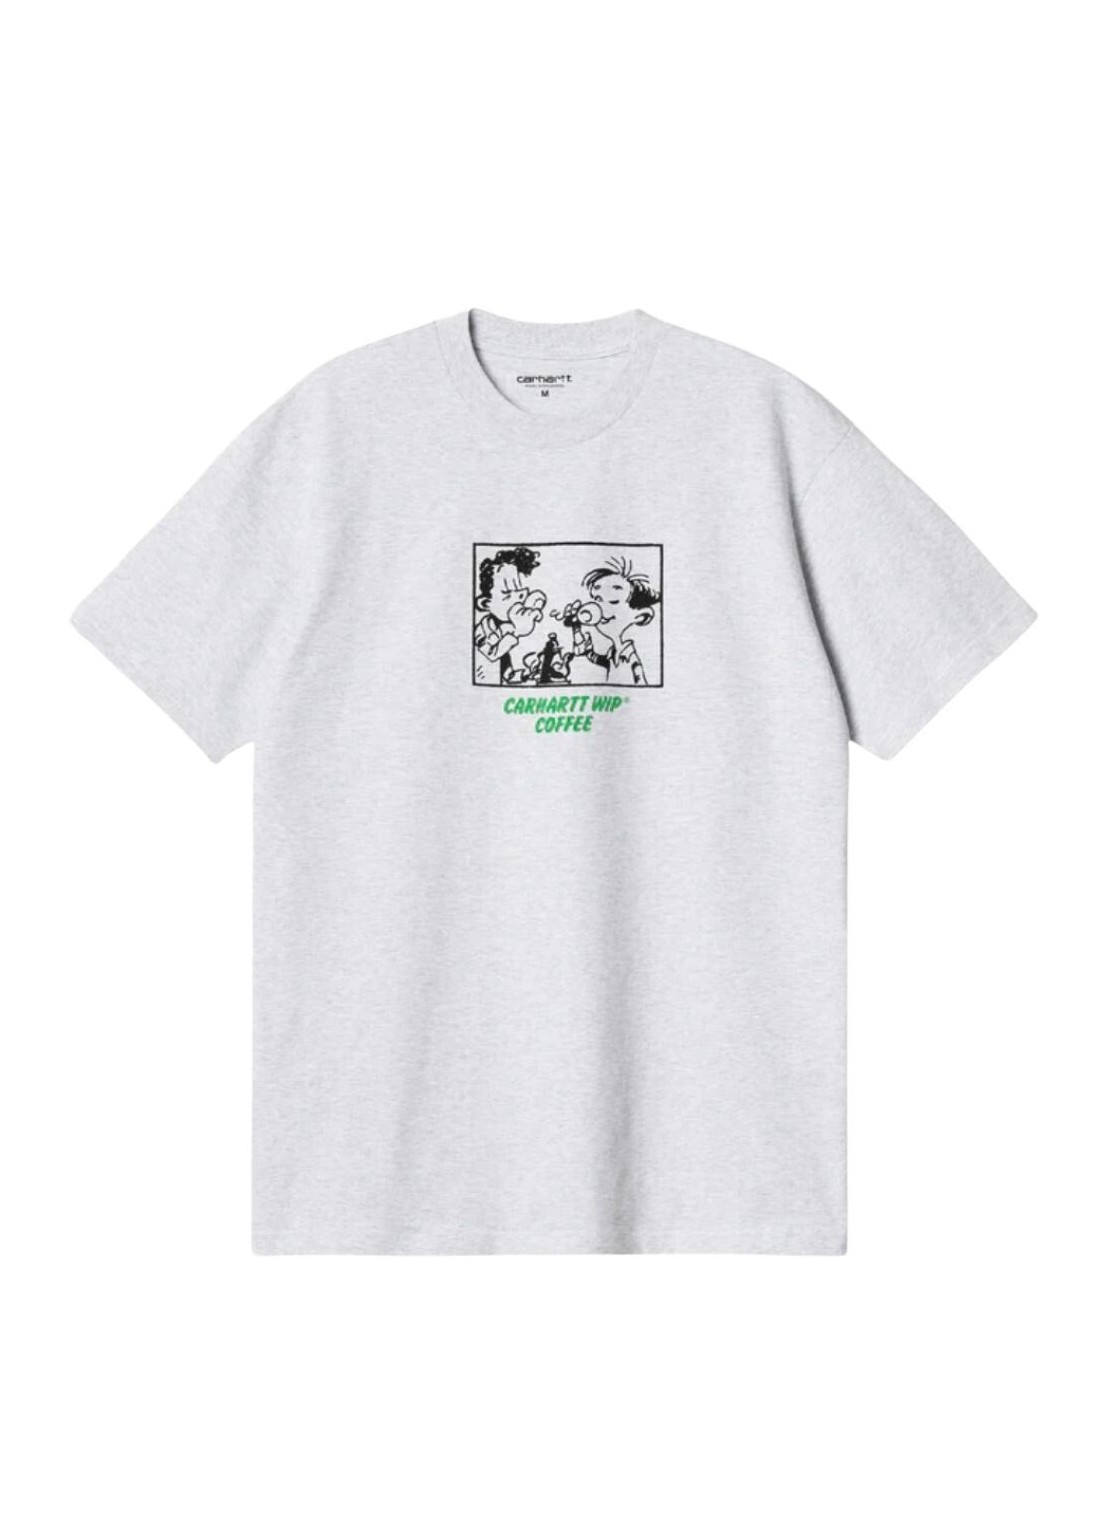 Camiseta carhartt t-shirt man s/s carhartt wip coffee t-s i032119 482xx talla XXL
 